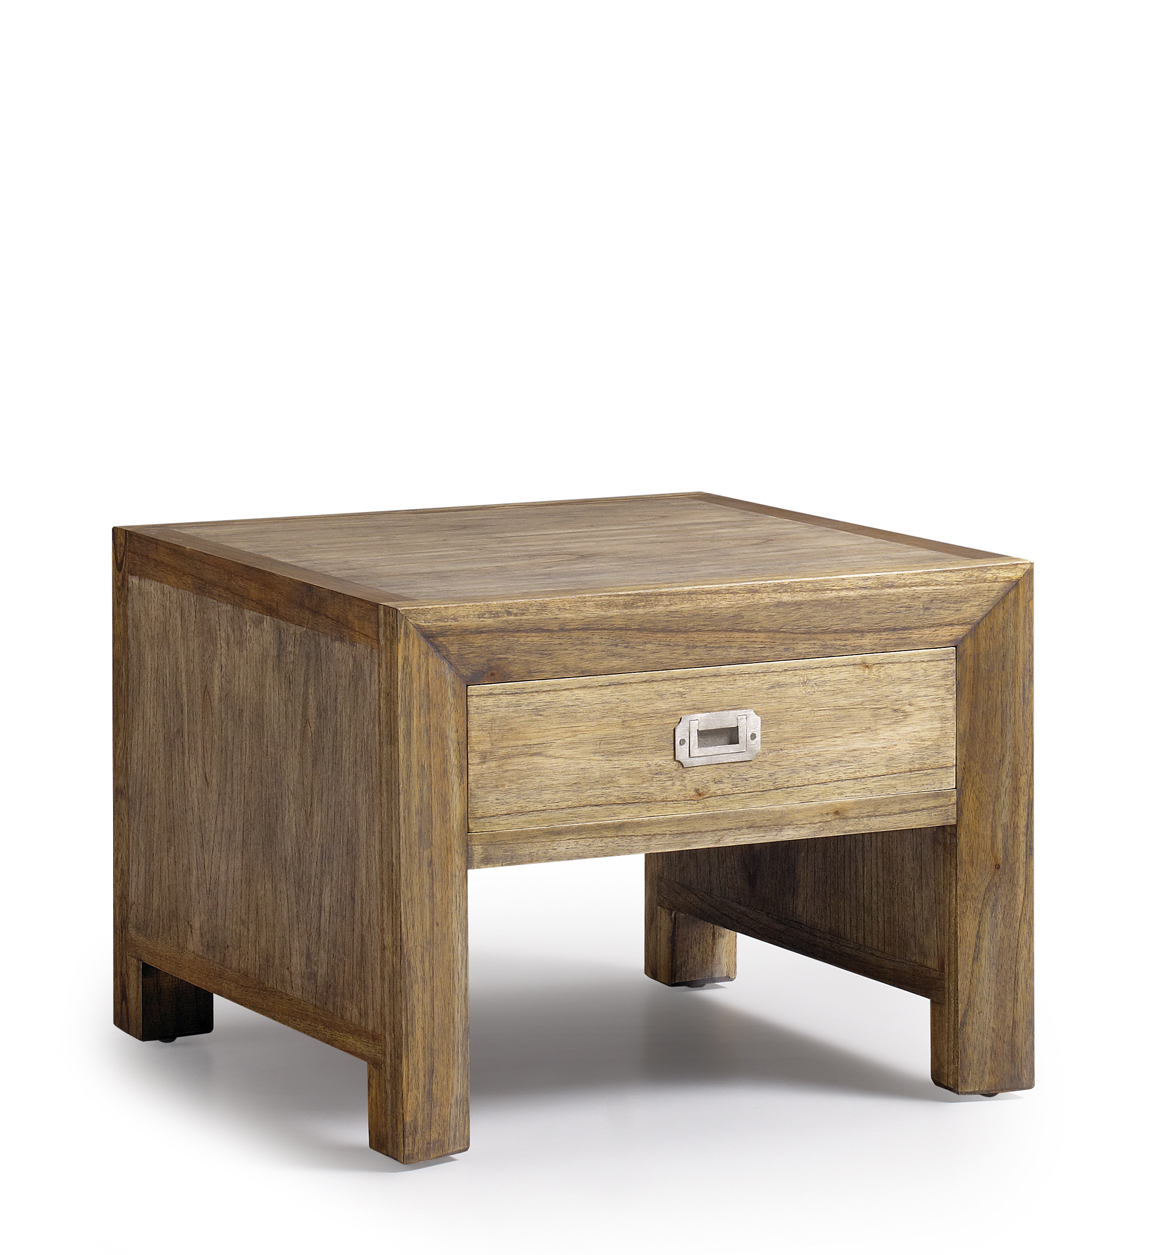 Table basse en bois marron L 60 cm